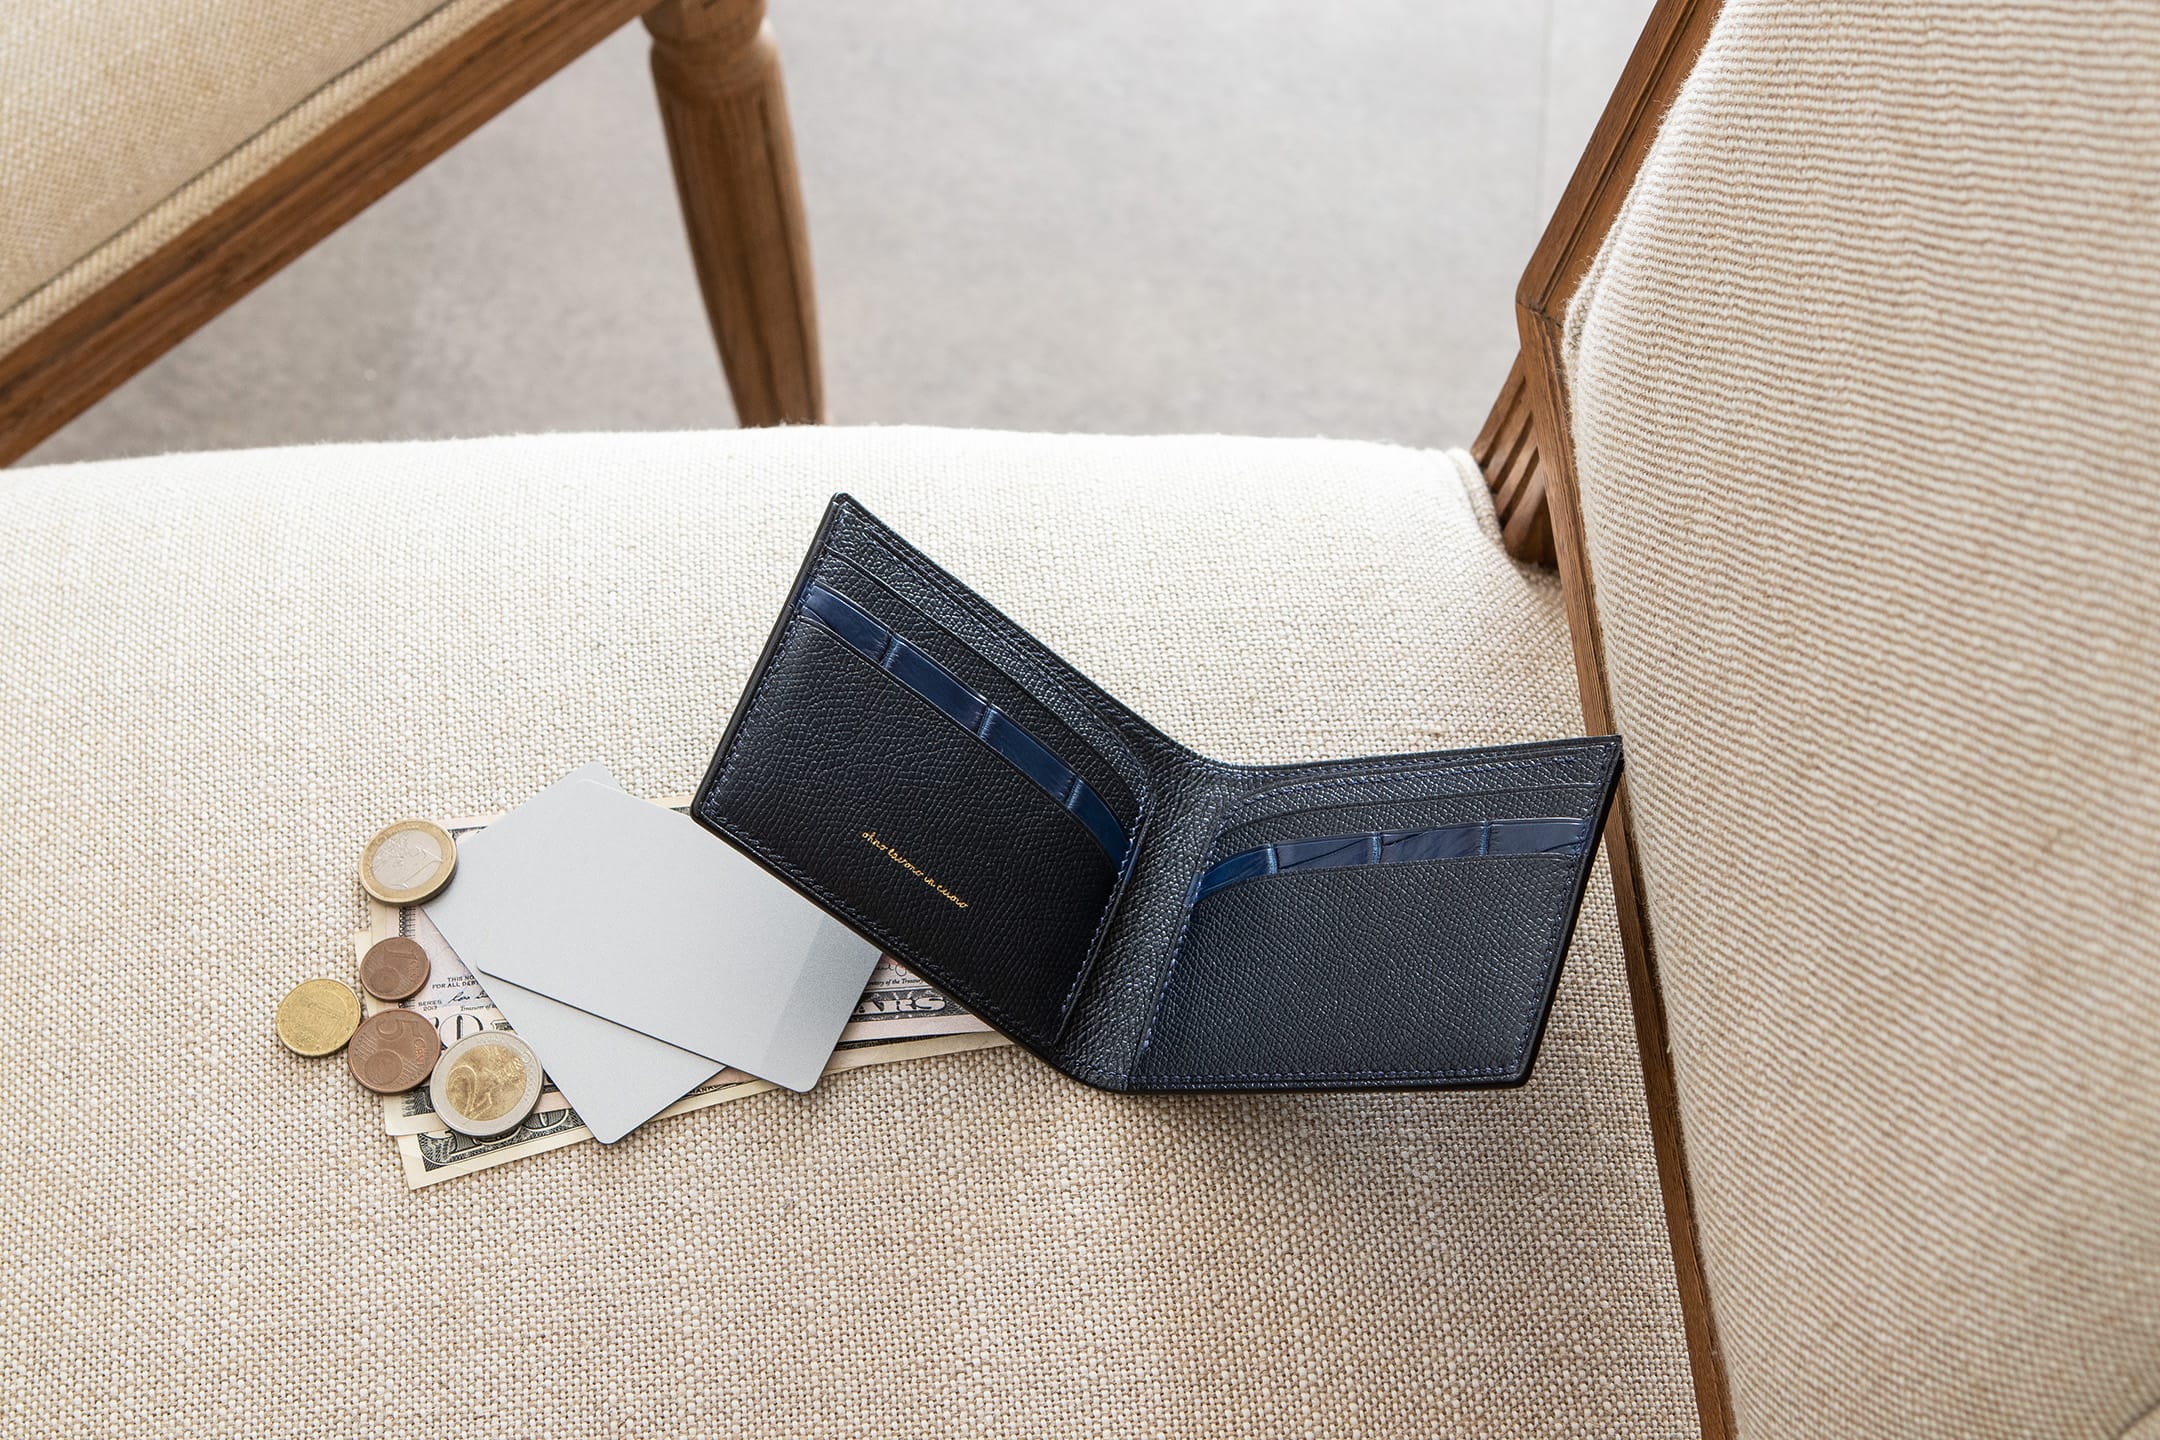 藍染めポロサス 薄型二つ折り財布 by ohno lavoro in cuoio（オオノ ラヴォーロ イン クオイオ）